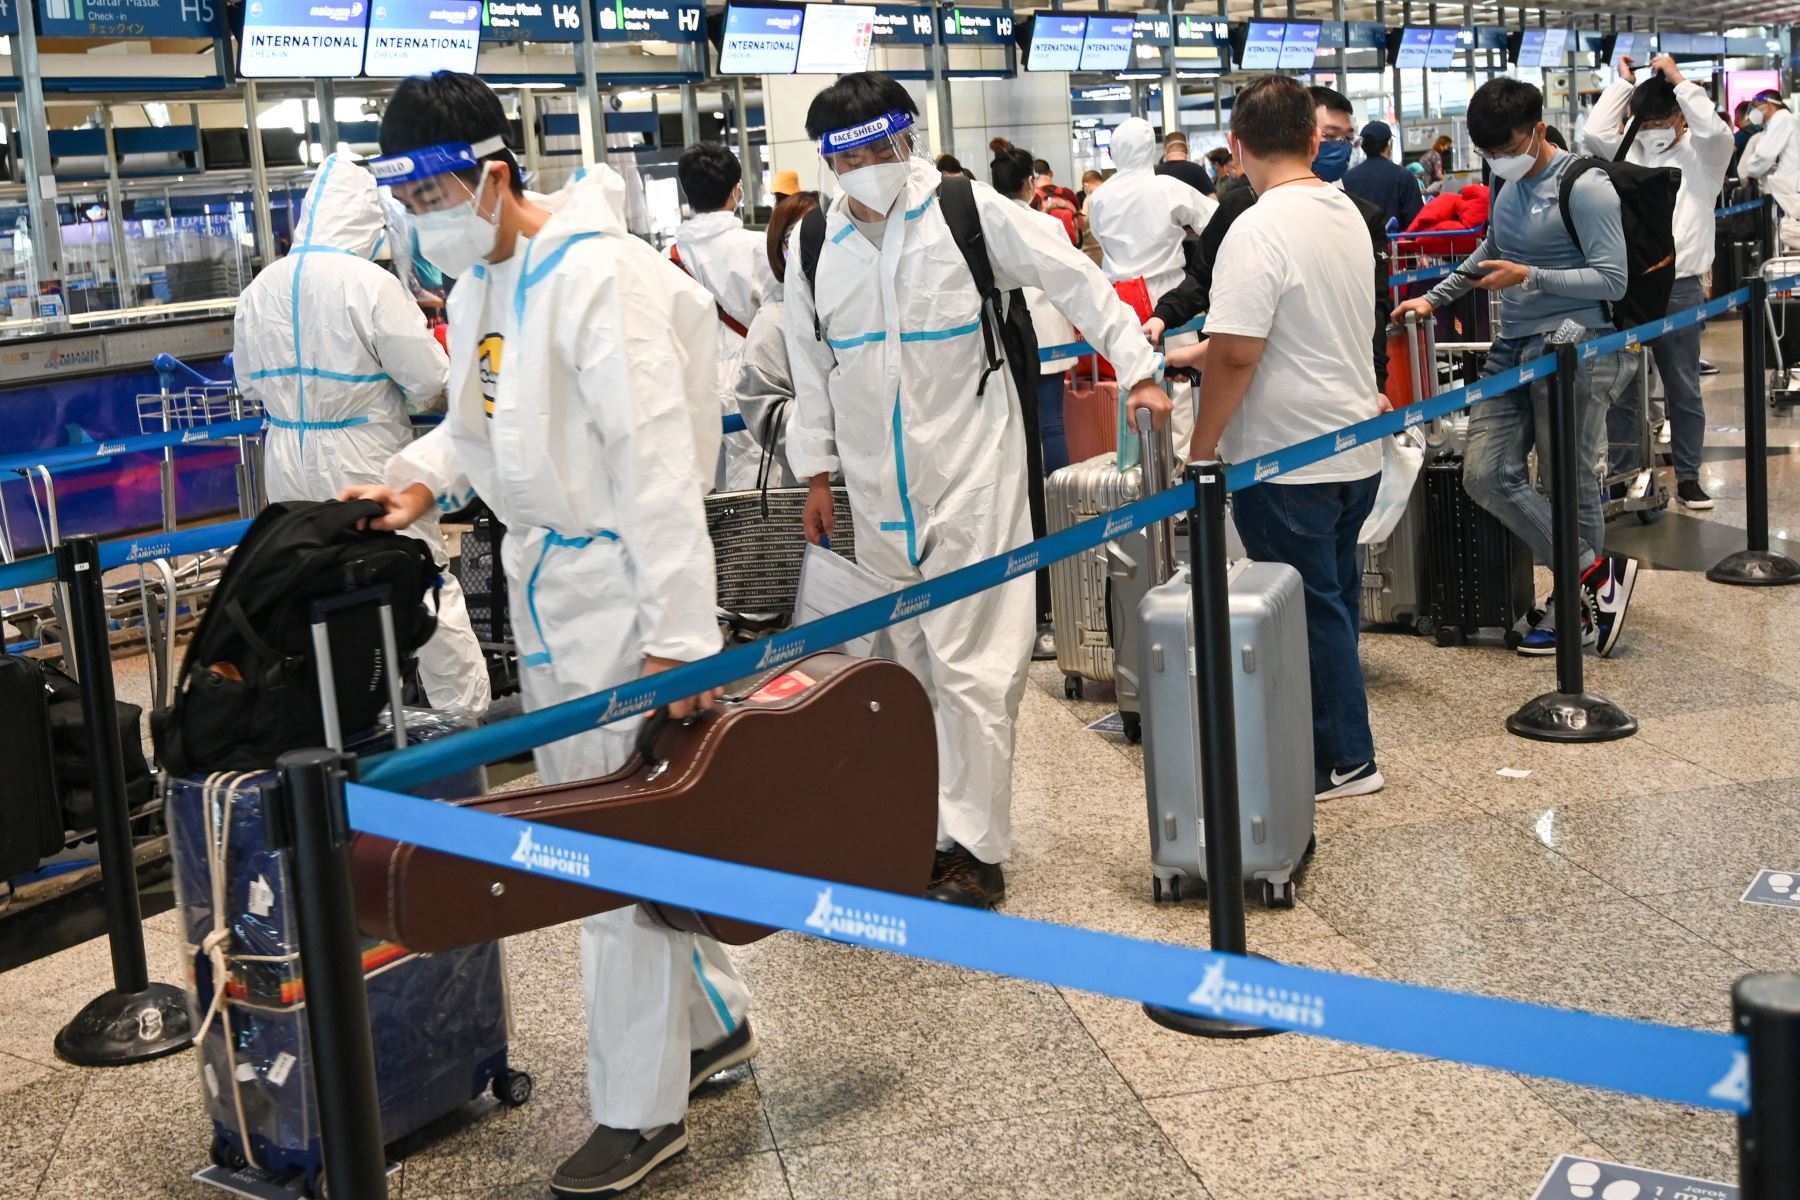 Pasajeros hacen cola para registrarse para su vuelo en el Aeropuerto Internacional de Kuala Lumpur en Sepang, ya que países de todo el mundo cerraron las fronteras y renovaron las restricciones de viaje en respuesta a la propagación de una nueva variación del coronavirus Covid-19 fuertemente mutada denominada Omicron. Foto: AFP